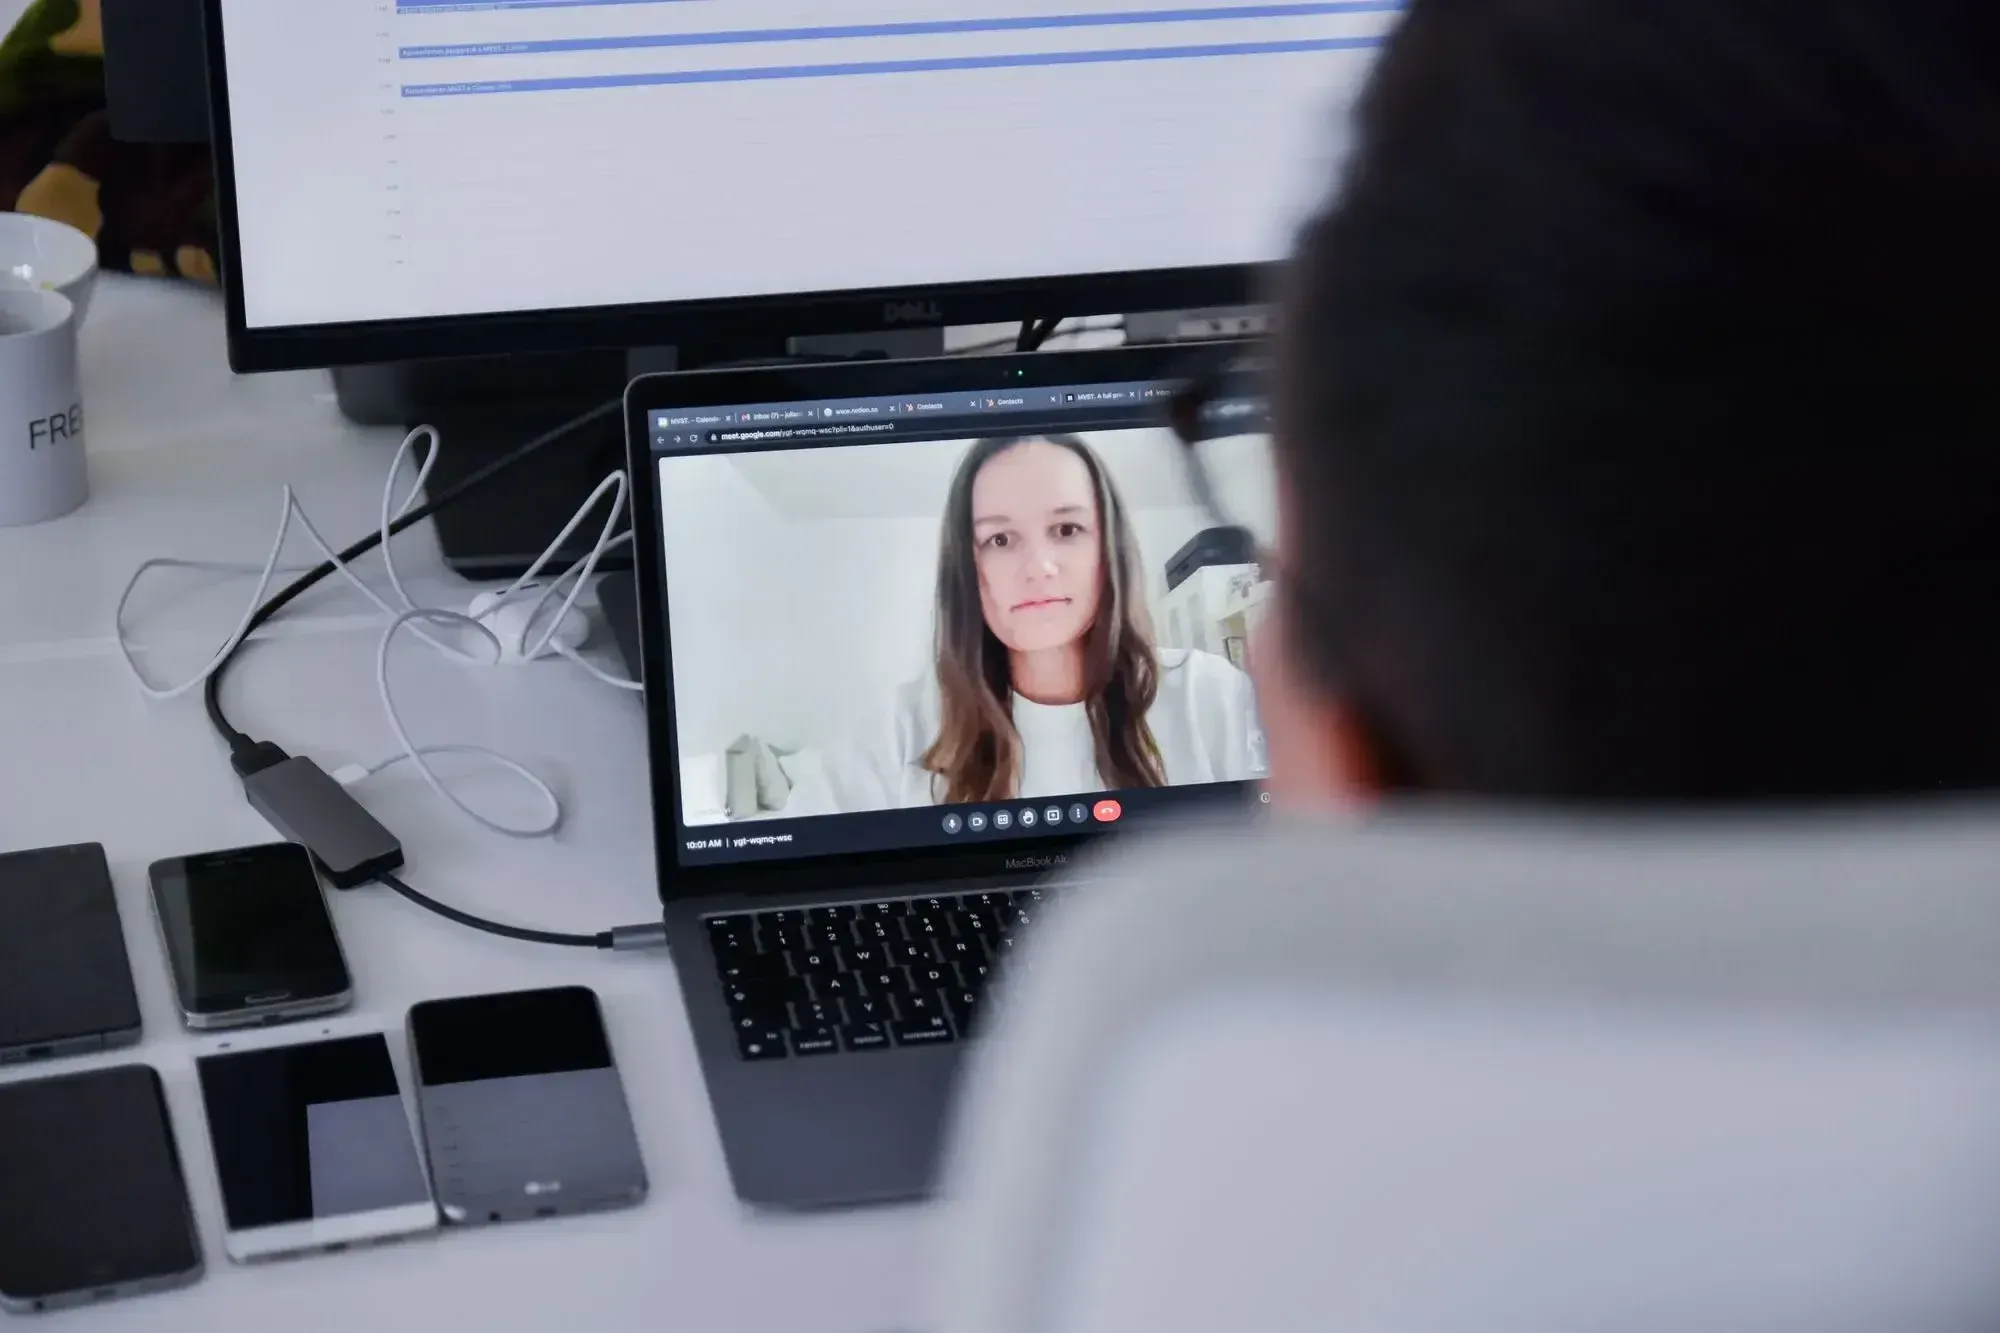 Frau mit langen braunen Haaren in einem virtuellen Meeting auf einem Laptop-Bildschirm, daneben fünf Smartphones.